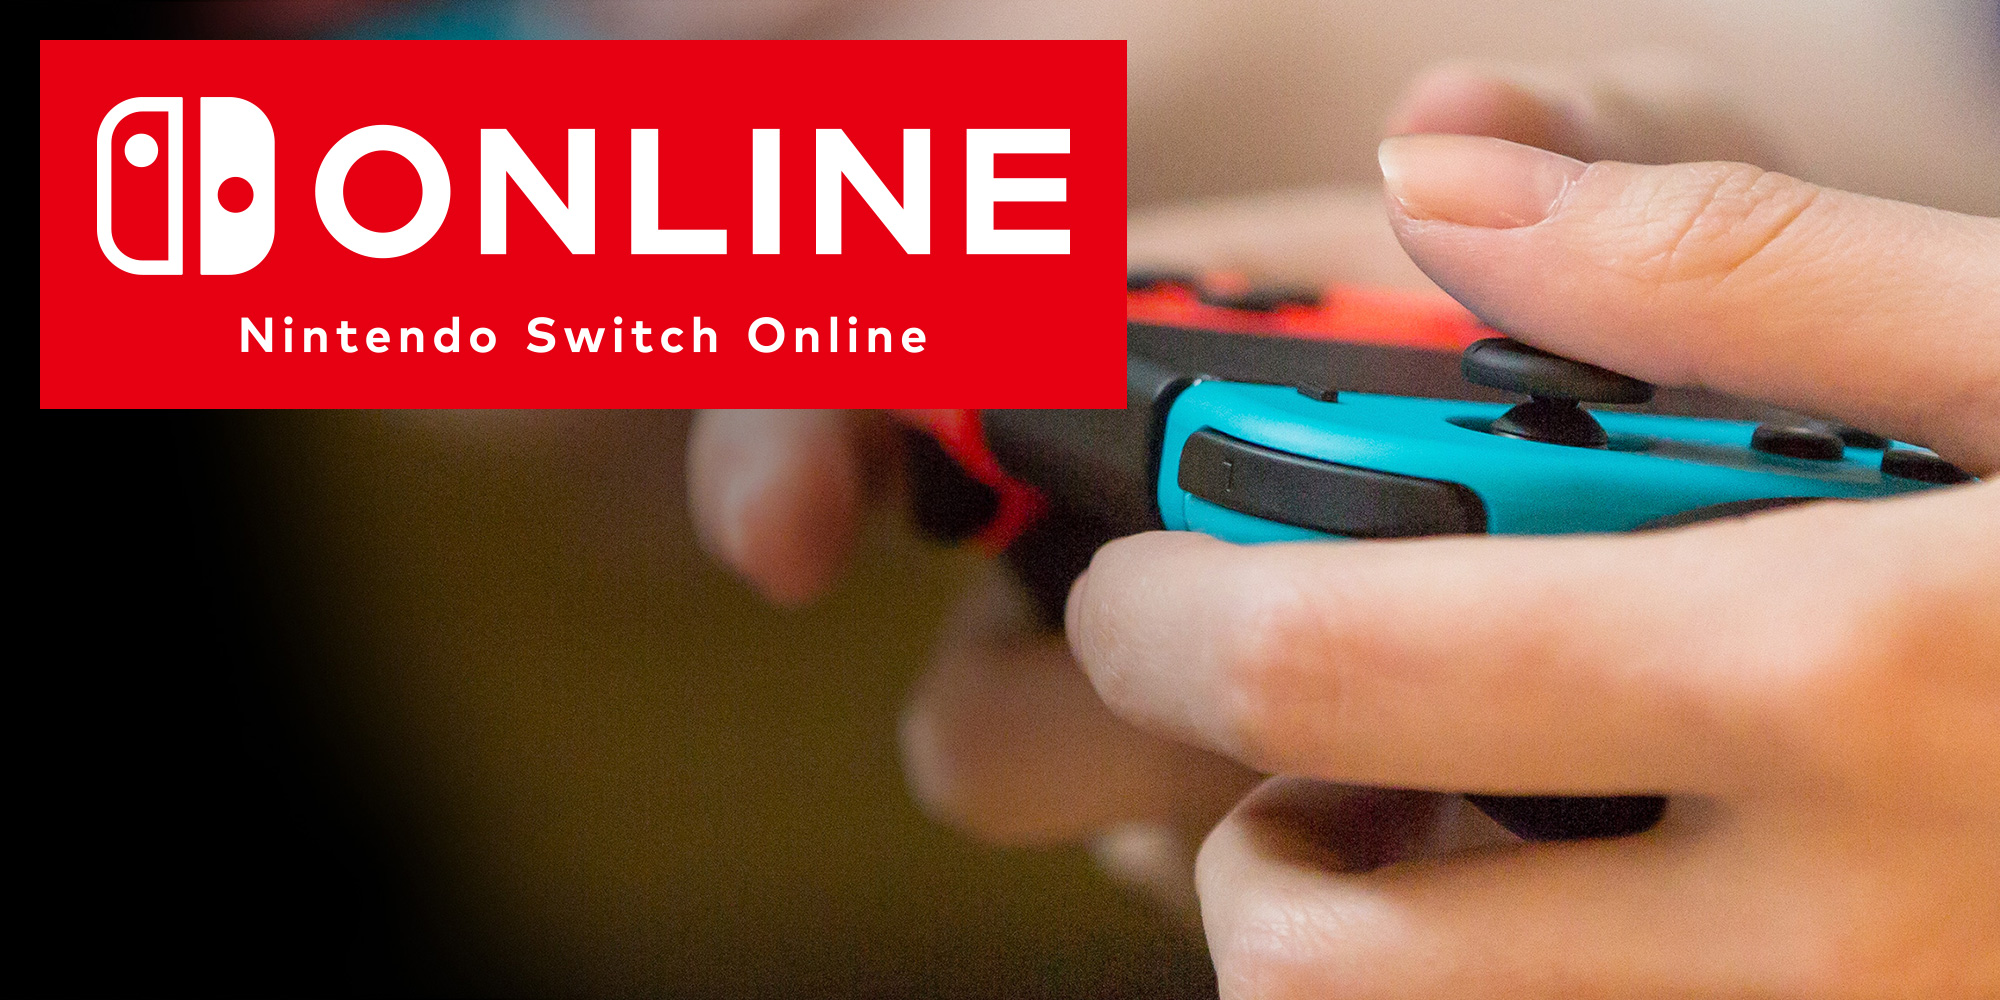 Le Nintendo Switch Online propose ses services gratuitement pendant 7 jours